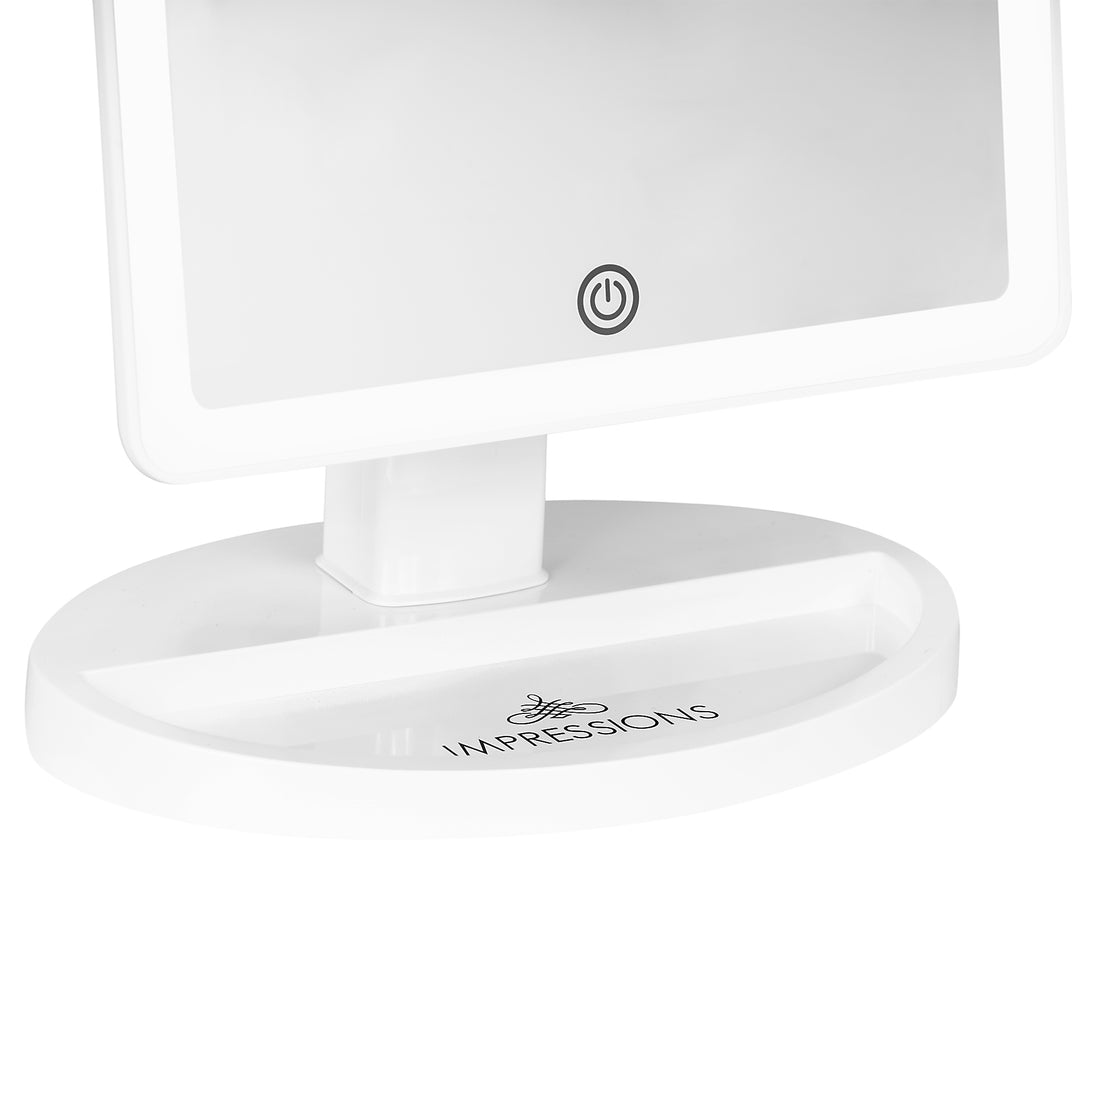 Impressions Vanity Touch Highlight Espejo de maquillaje con luz LED, espejo  de tocador de mesa con doble sistema de alimentación (oro rosa)